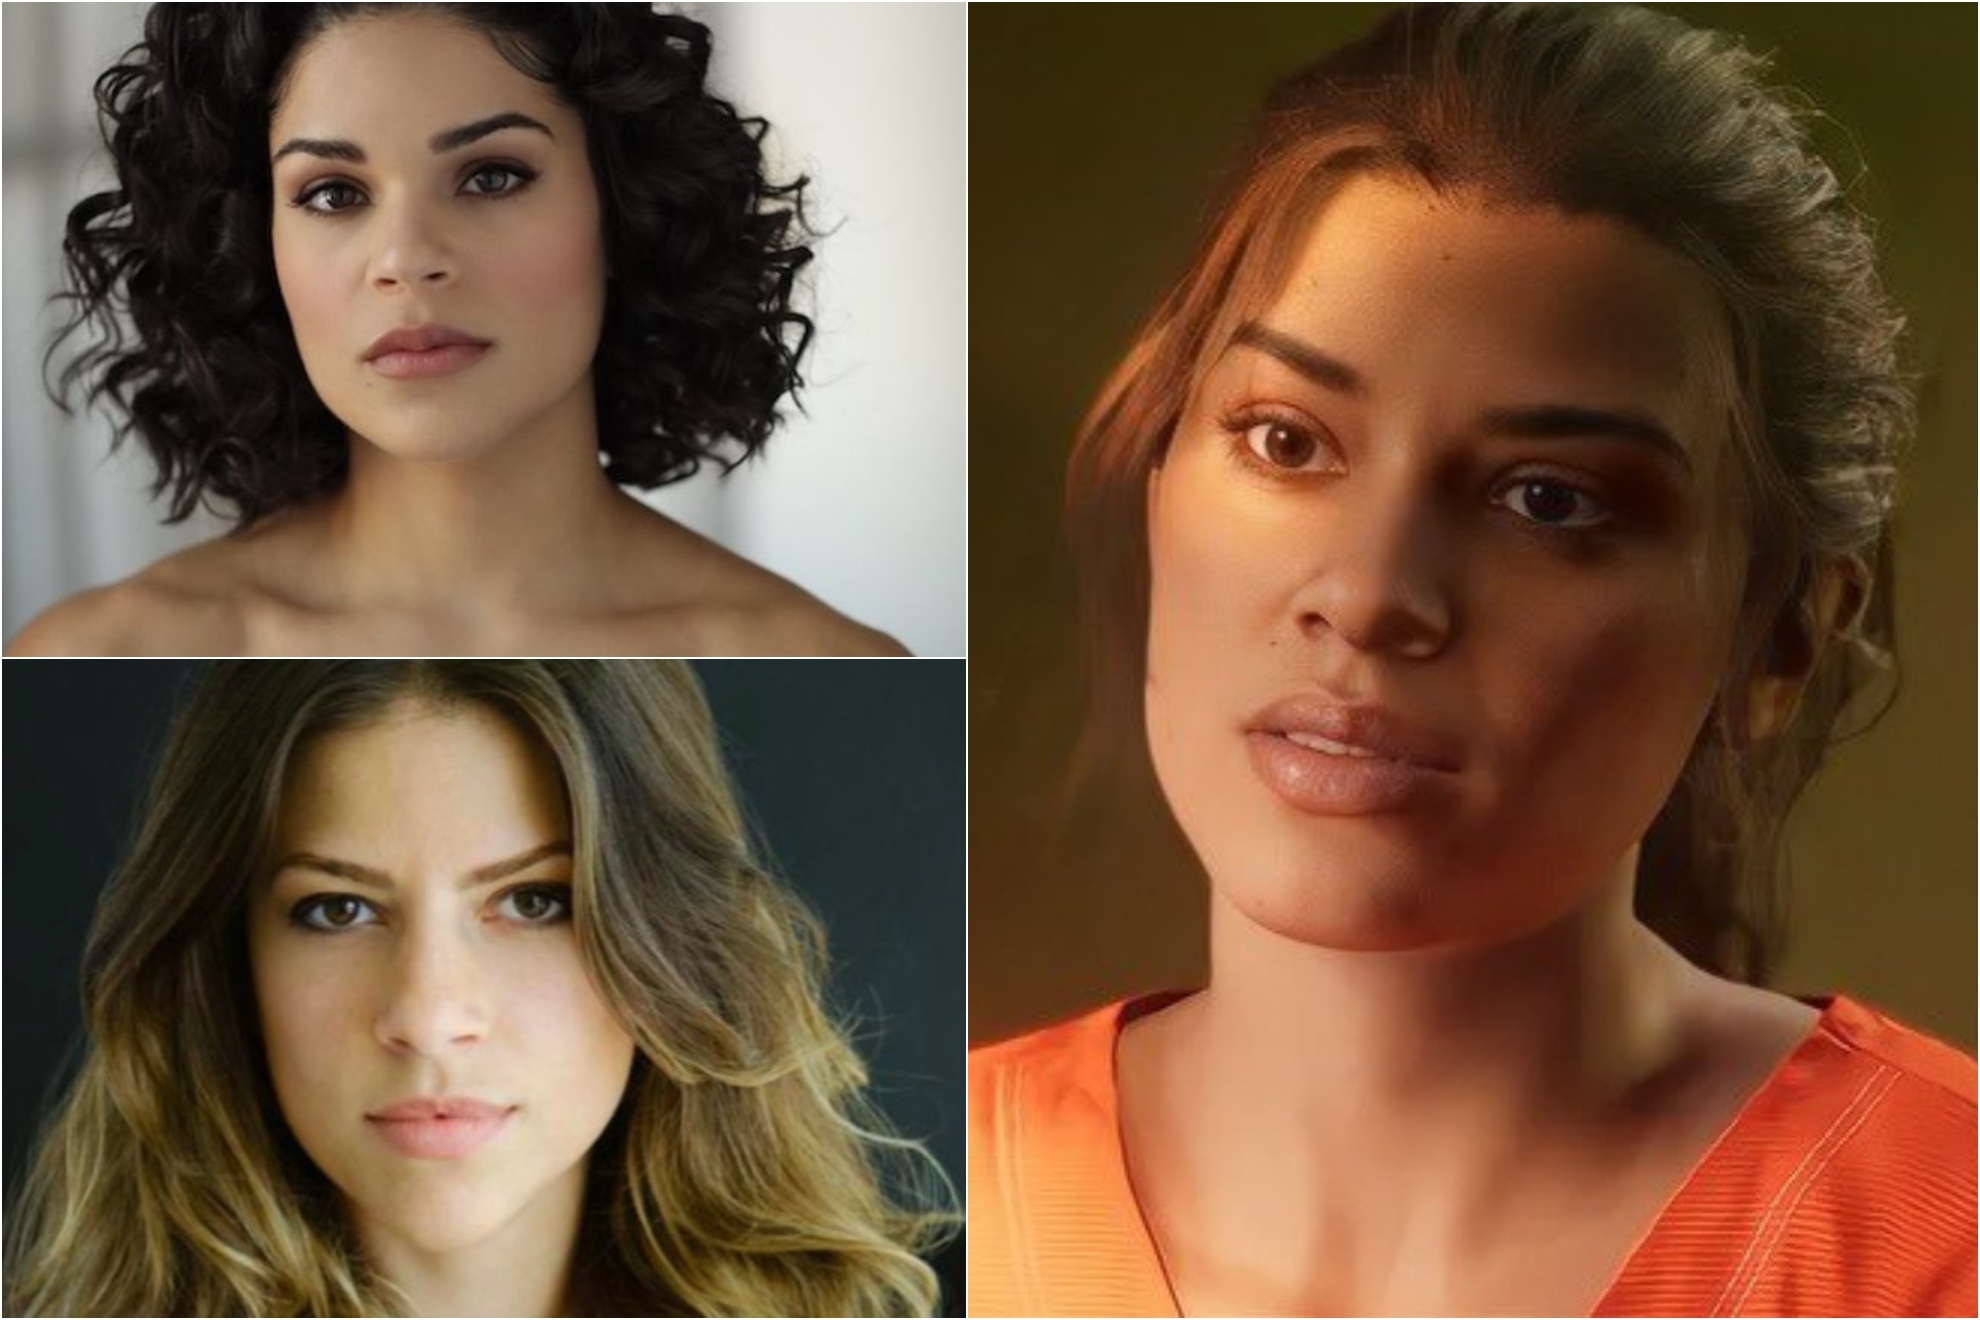 ¿Quién es la actriz que da vida a Lucía, la protagonista de GTA VI? La comunidad debate entre estas dos